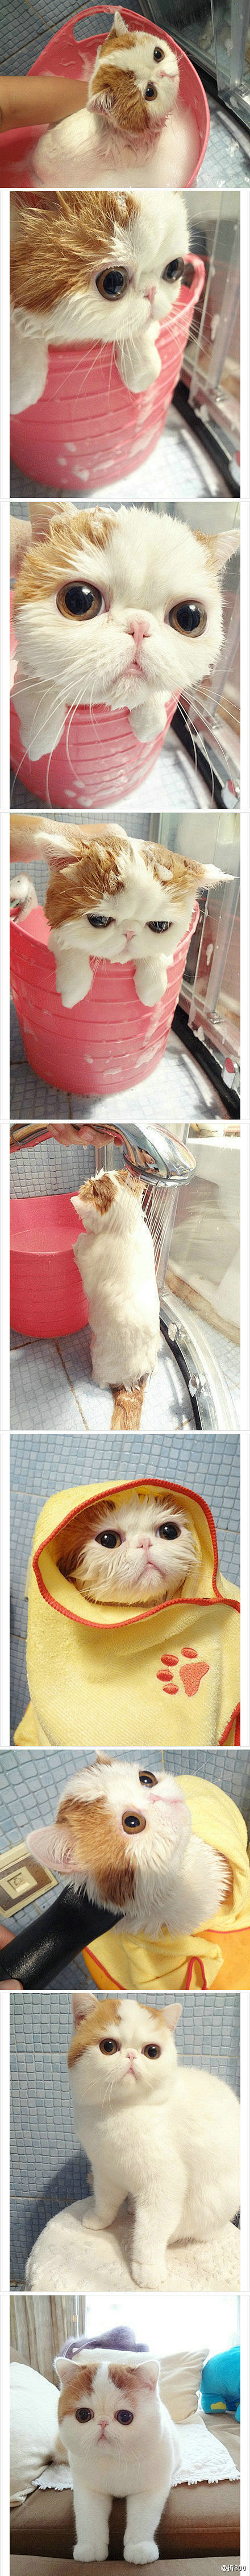 【加菲猫洗澡到吹干全过程】真正的美猫不惧...